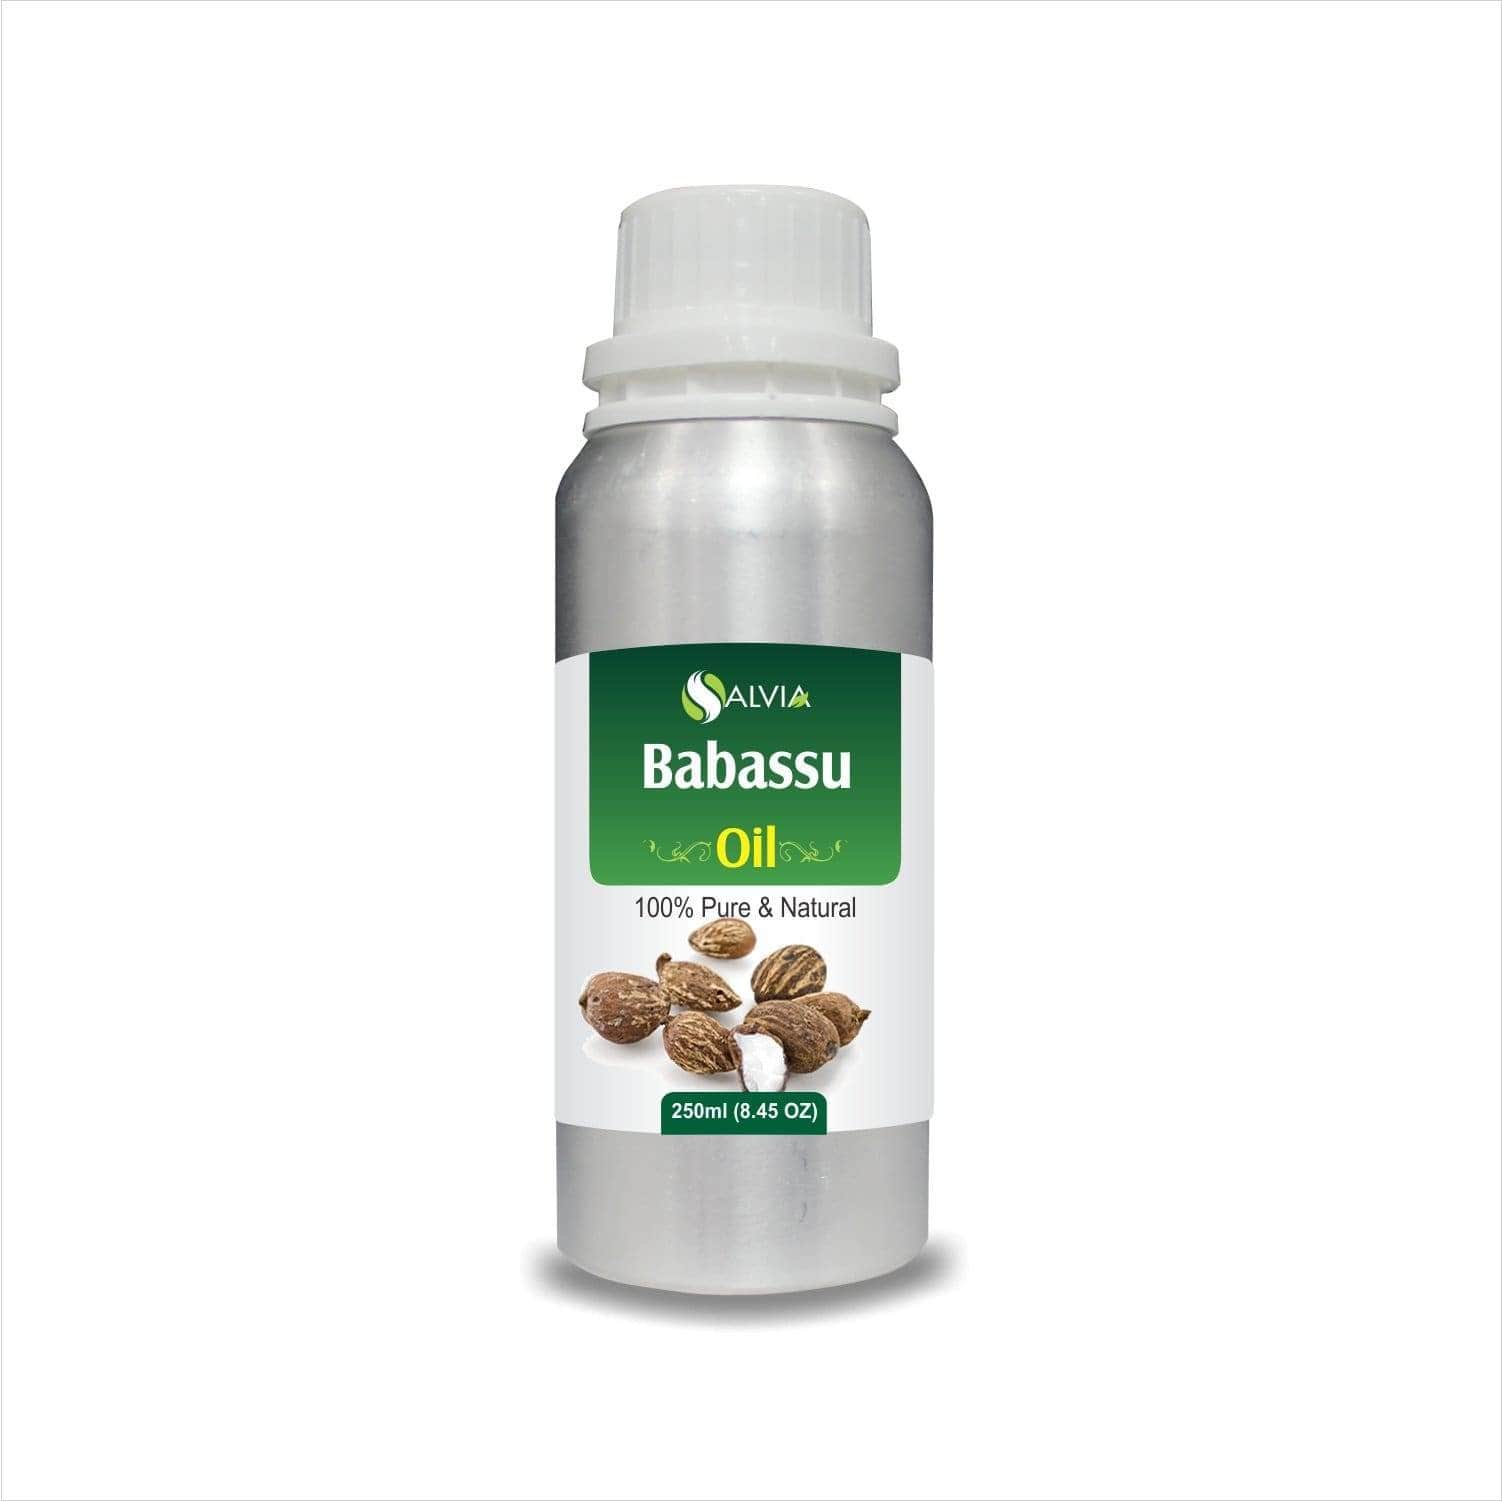 babassu oil benefits